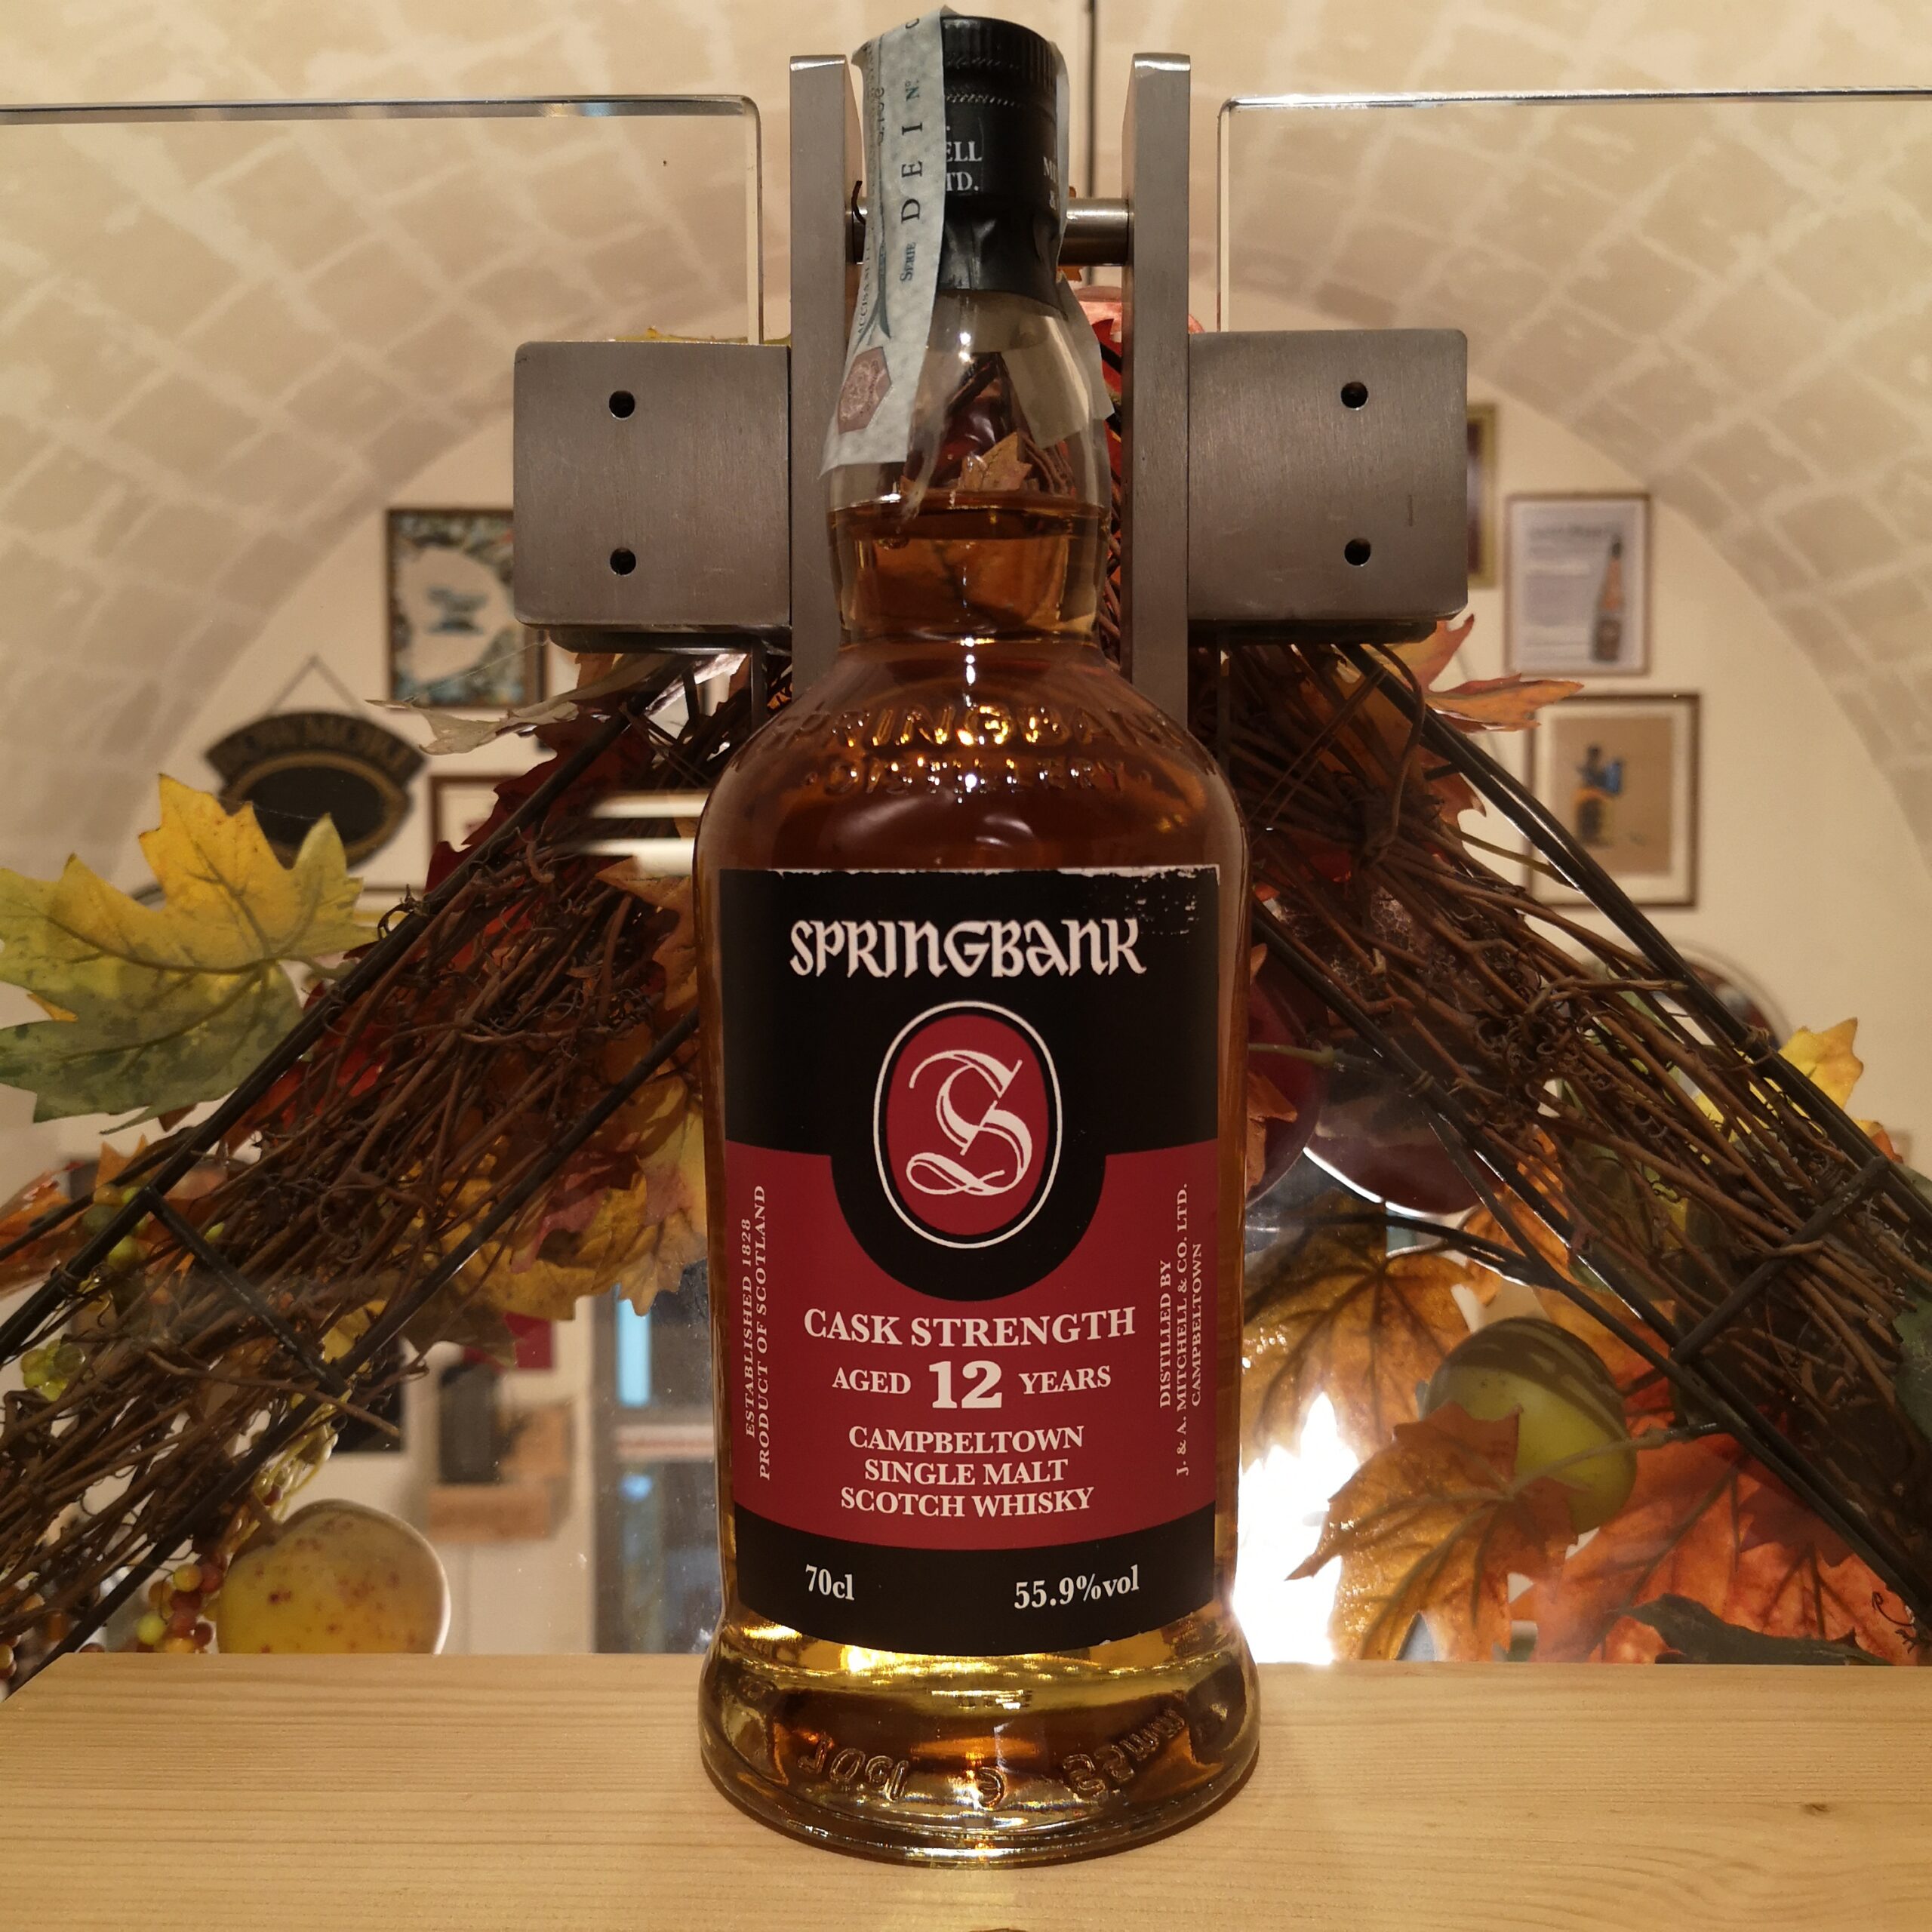 Springbank Single Malt Scotch Whisky Cask Strength 12 YO batch 23